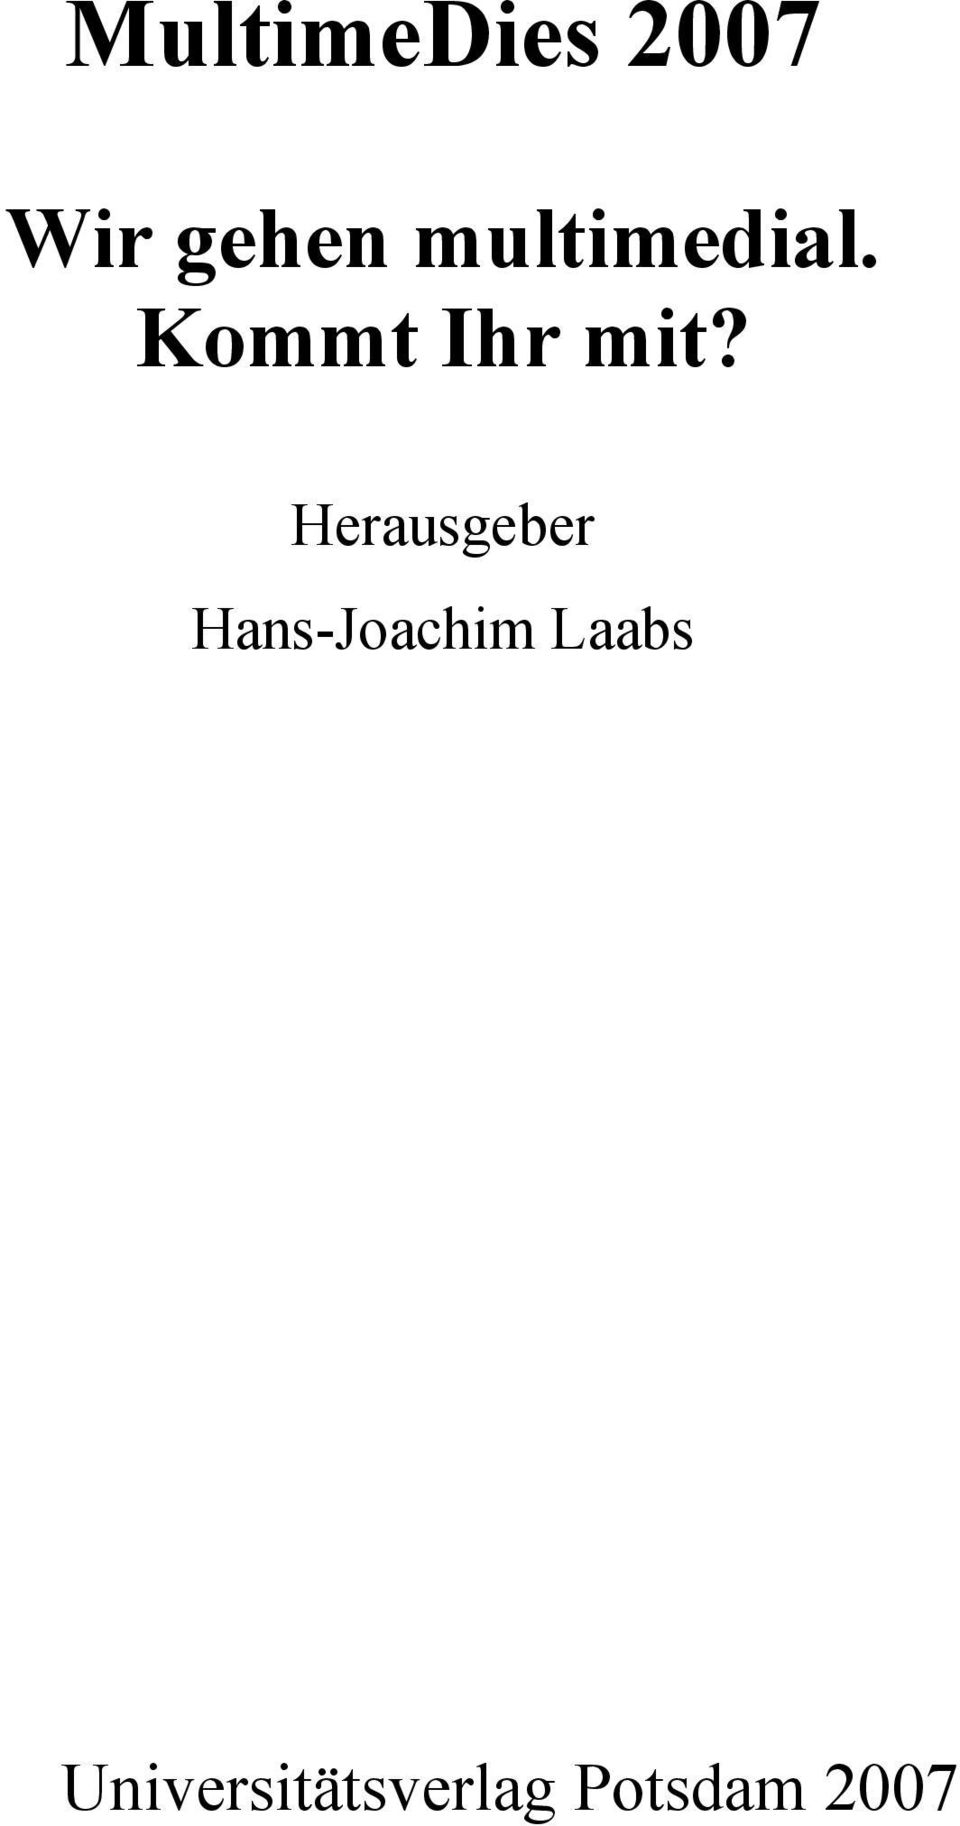 Herausgeber Hans-Joachim